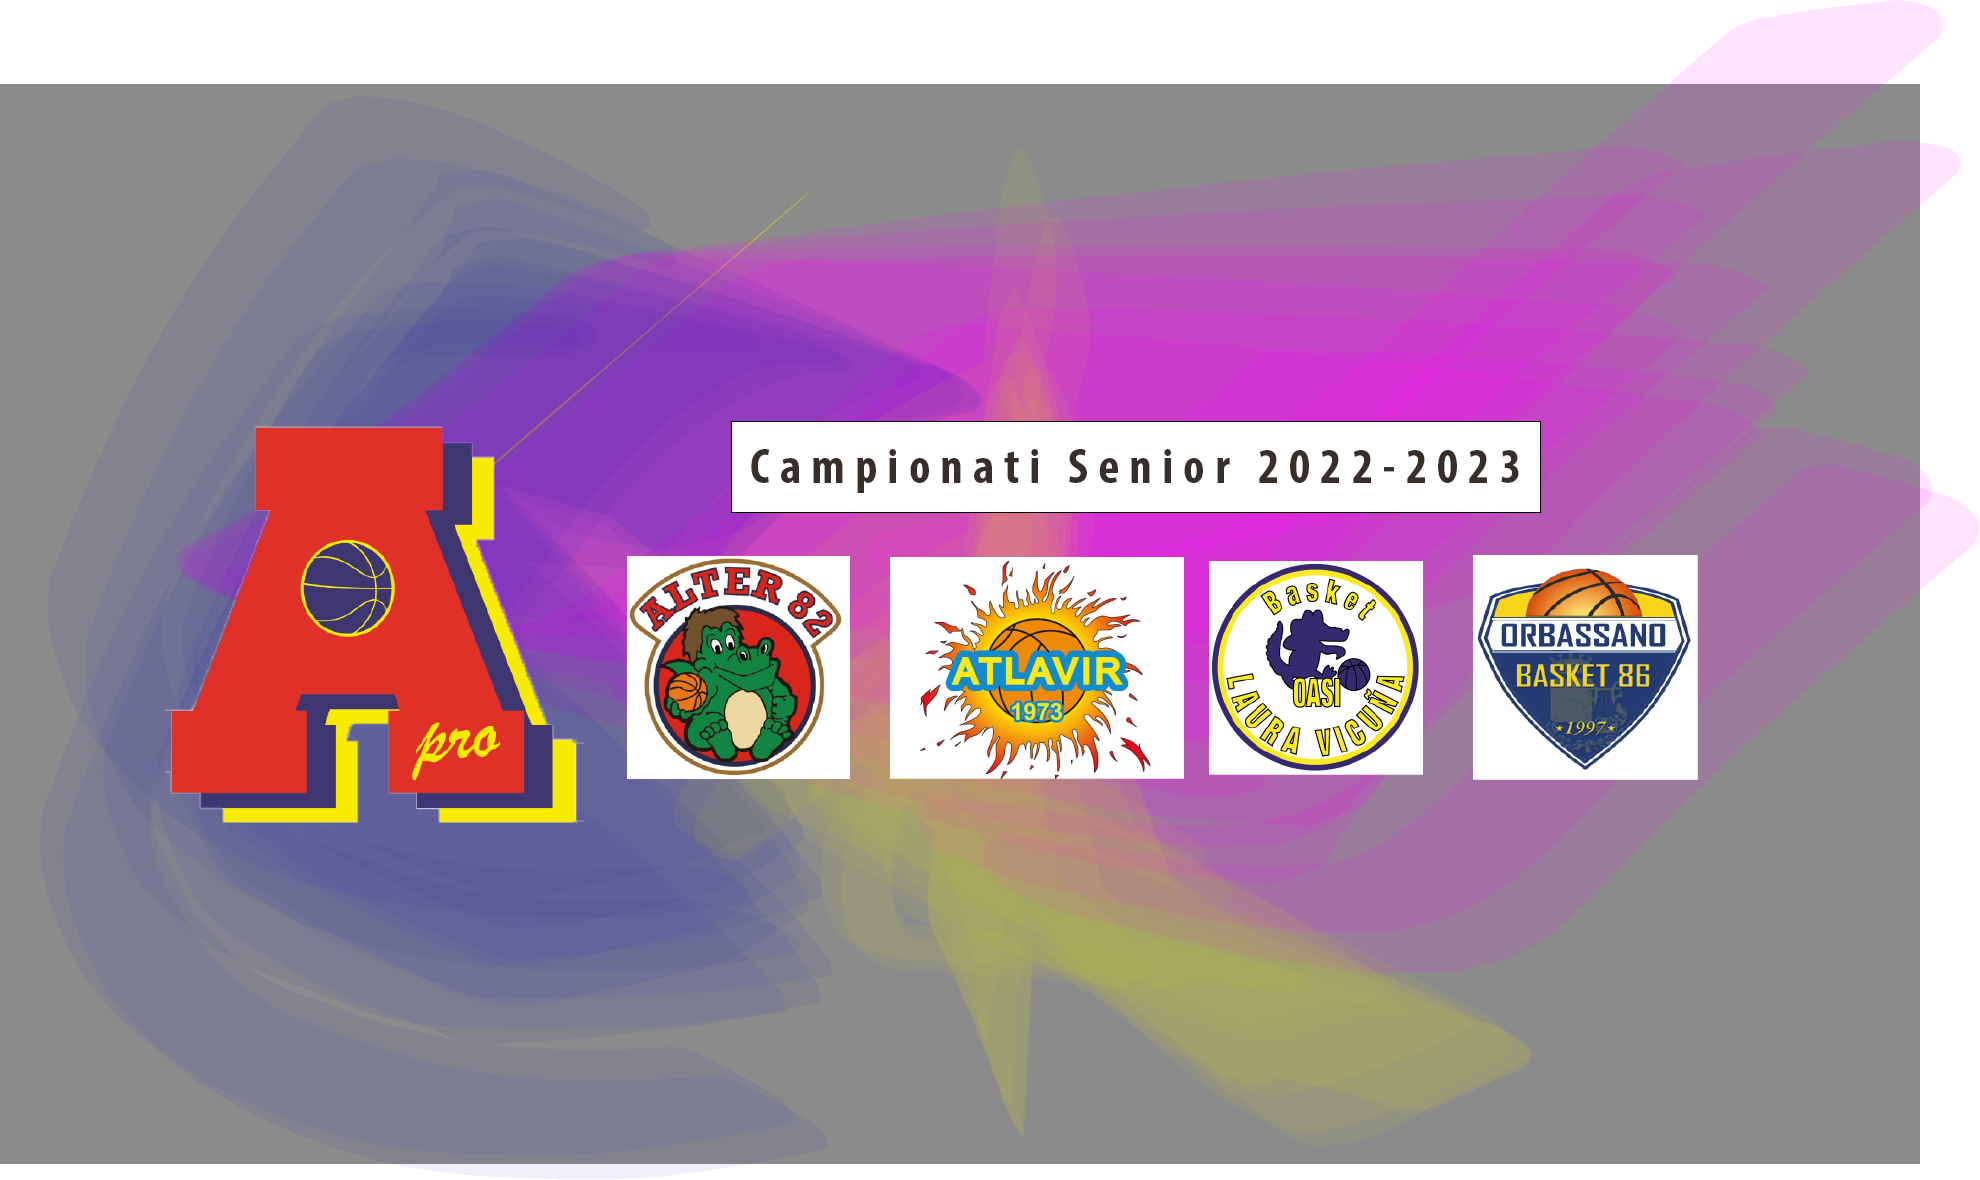 A Rivalta presentate tutte le squadre di Area Pro senior : Atlavir D, Oasi D, Orbassano D, Prima divisione Alter’82 e AreaPro2020 C silver.